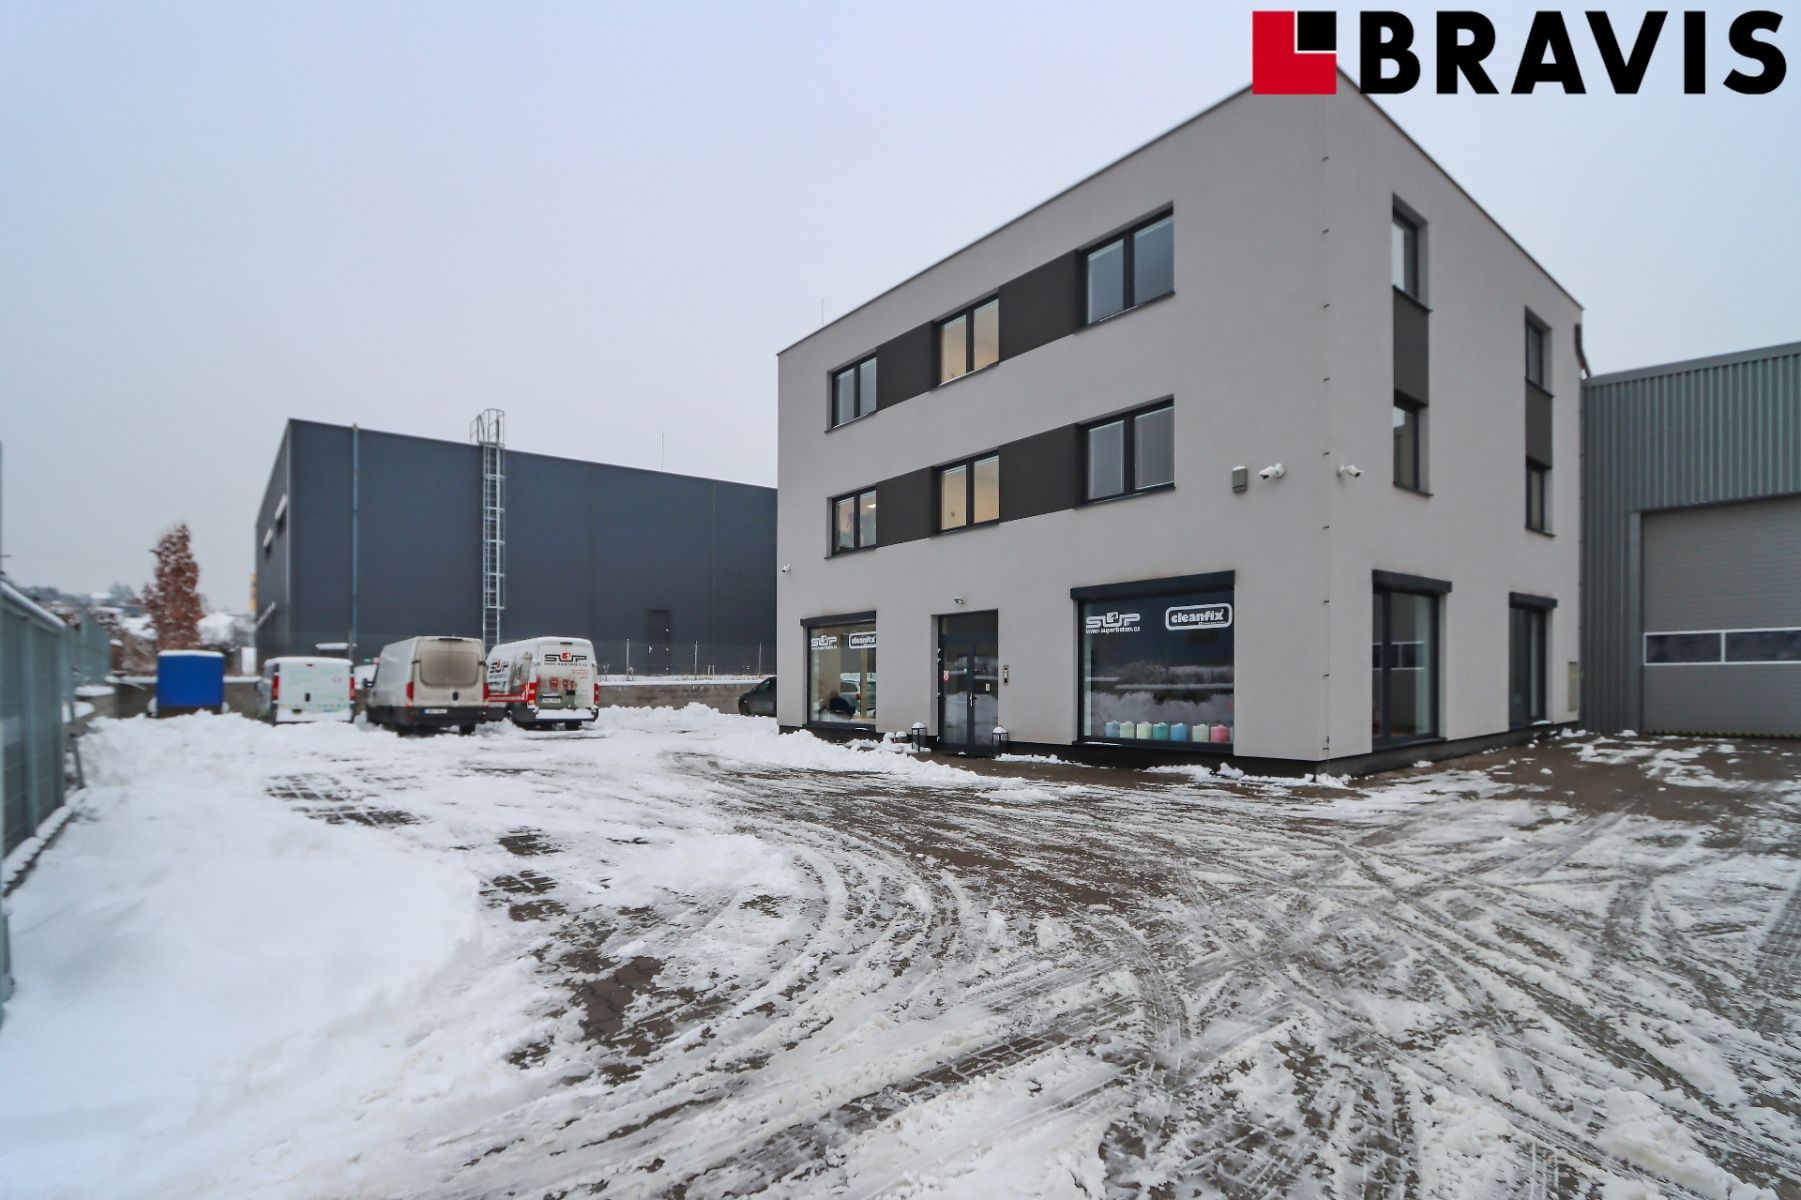 Podnájem skladových prostor 50 - 200 m2 v novém průmyslovém areálu v Popůvkách u Brna, obrázek č. 3